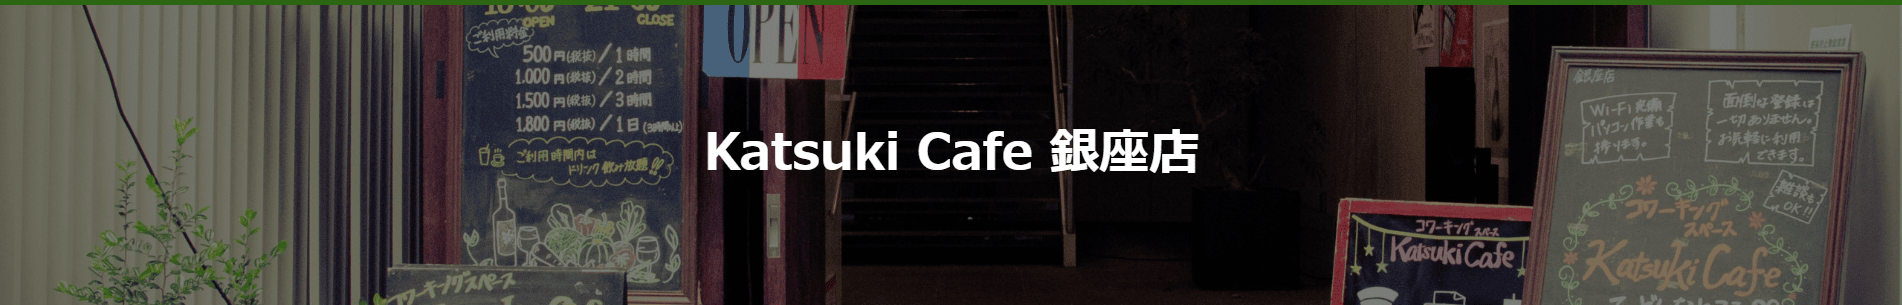 Katsuki Cafe 銀座店